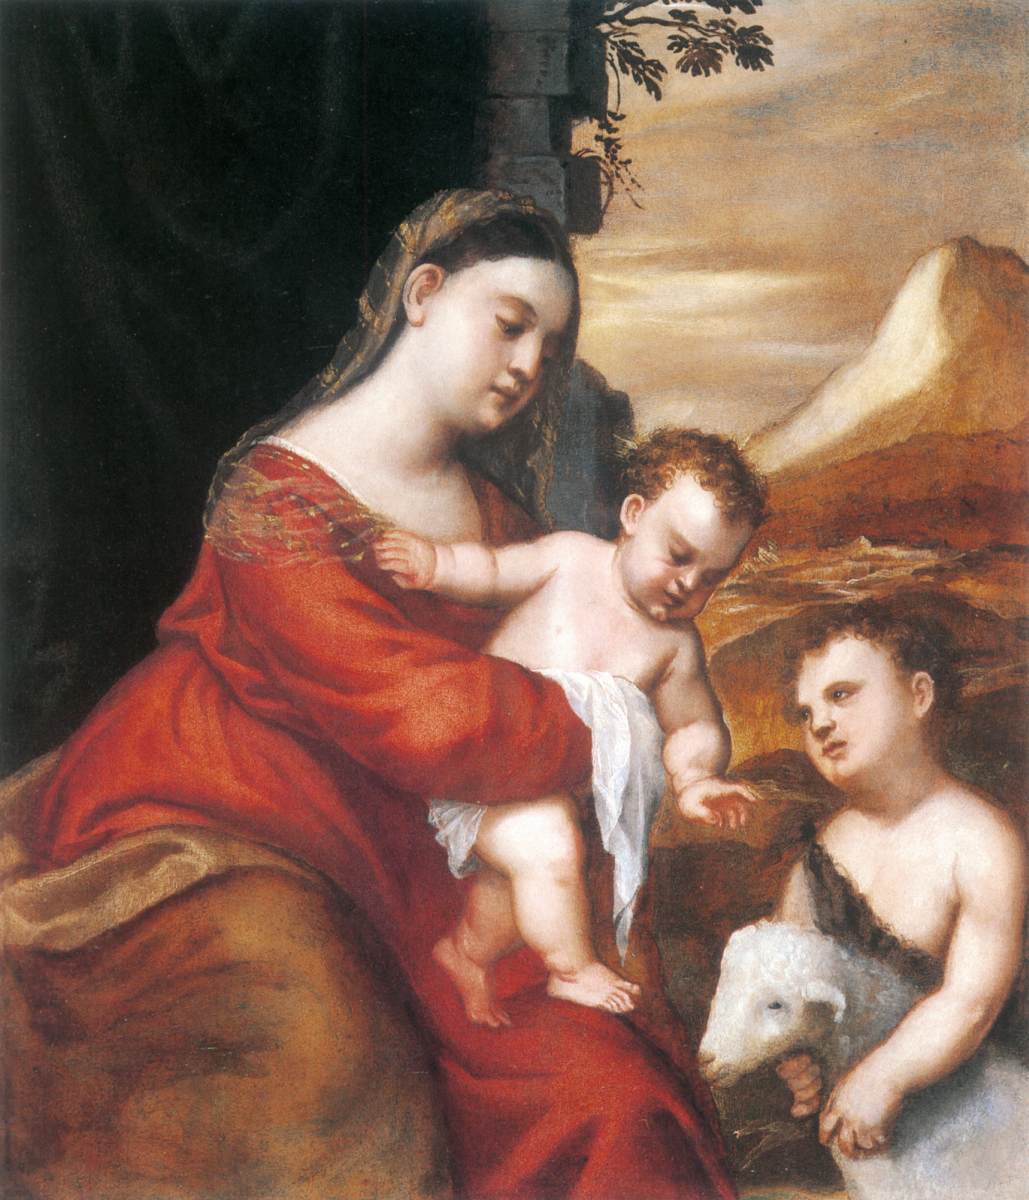 La Vergine e il bambino con il bambino San Juan Bautista